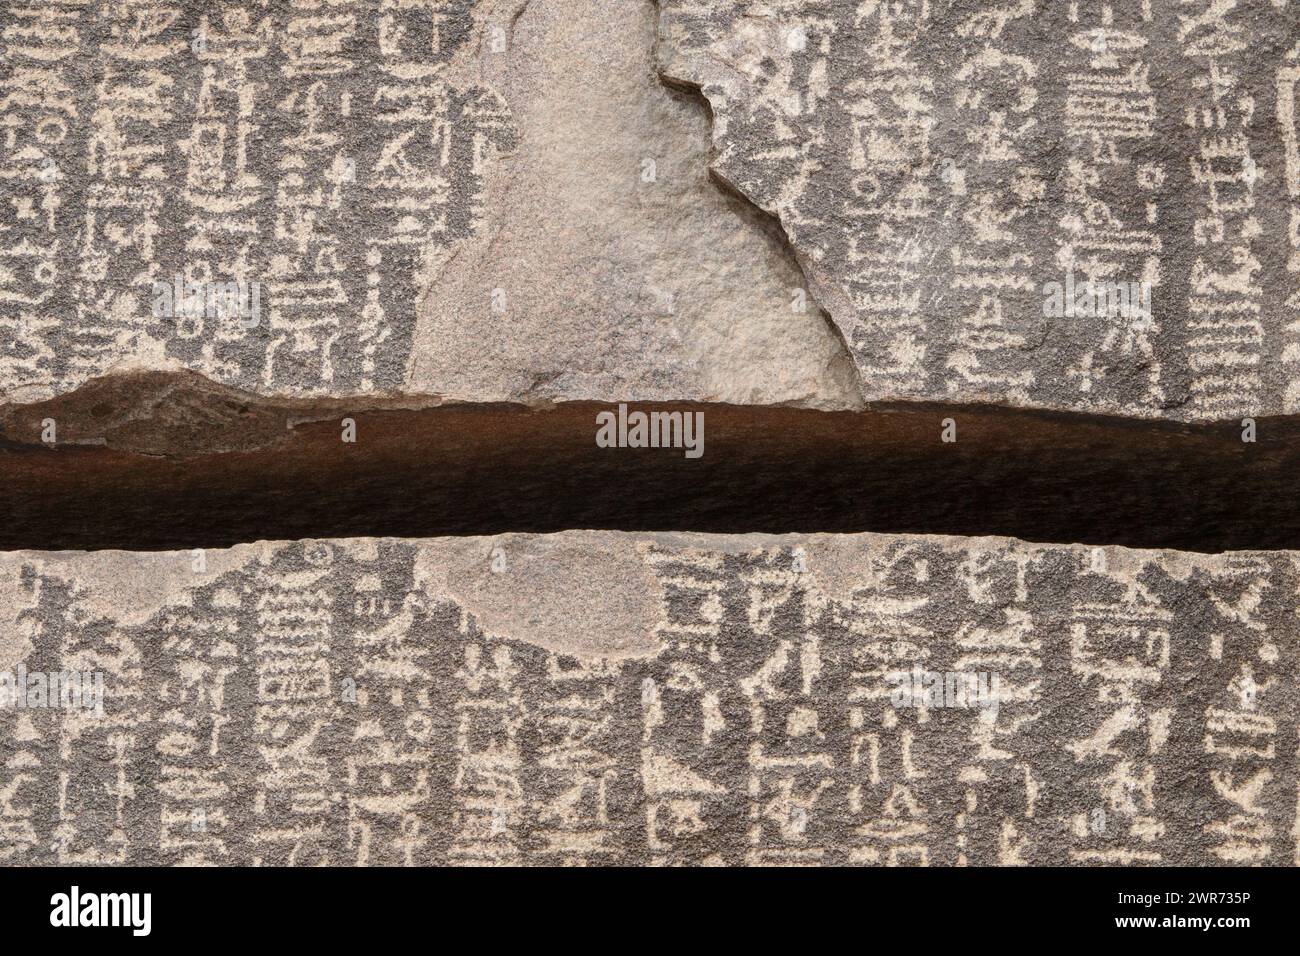 Nahaufnahme der Spalte in der Hungerstele auf Sehel Island mit ptolemäischen Inschriften über sieben Jahre Hungersnot während der 3. Dynastie. Stockfoto